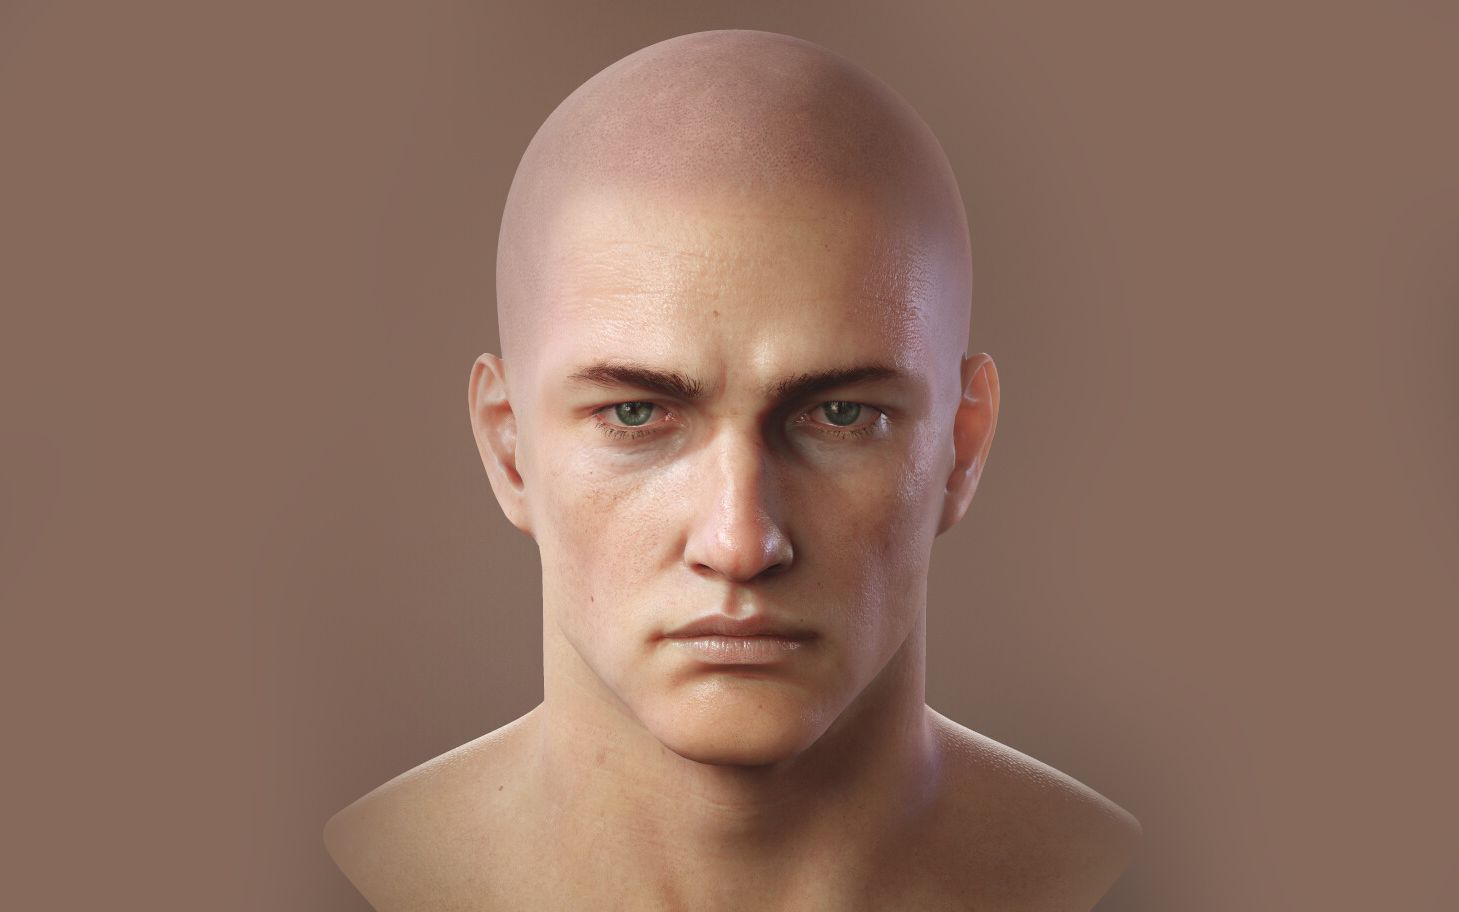 游戏男性角色建模,maya零基础制作人物头部模型完整演示